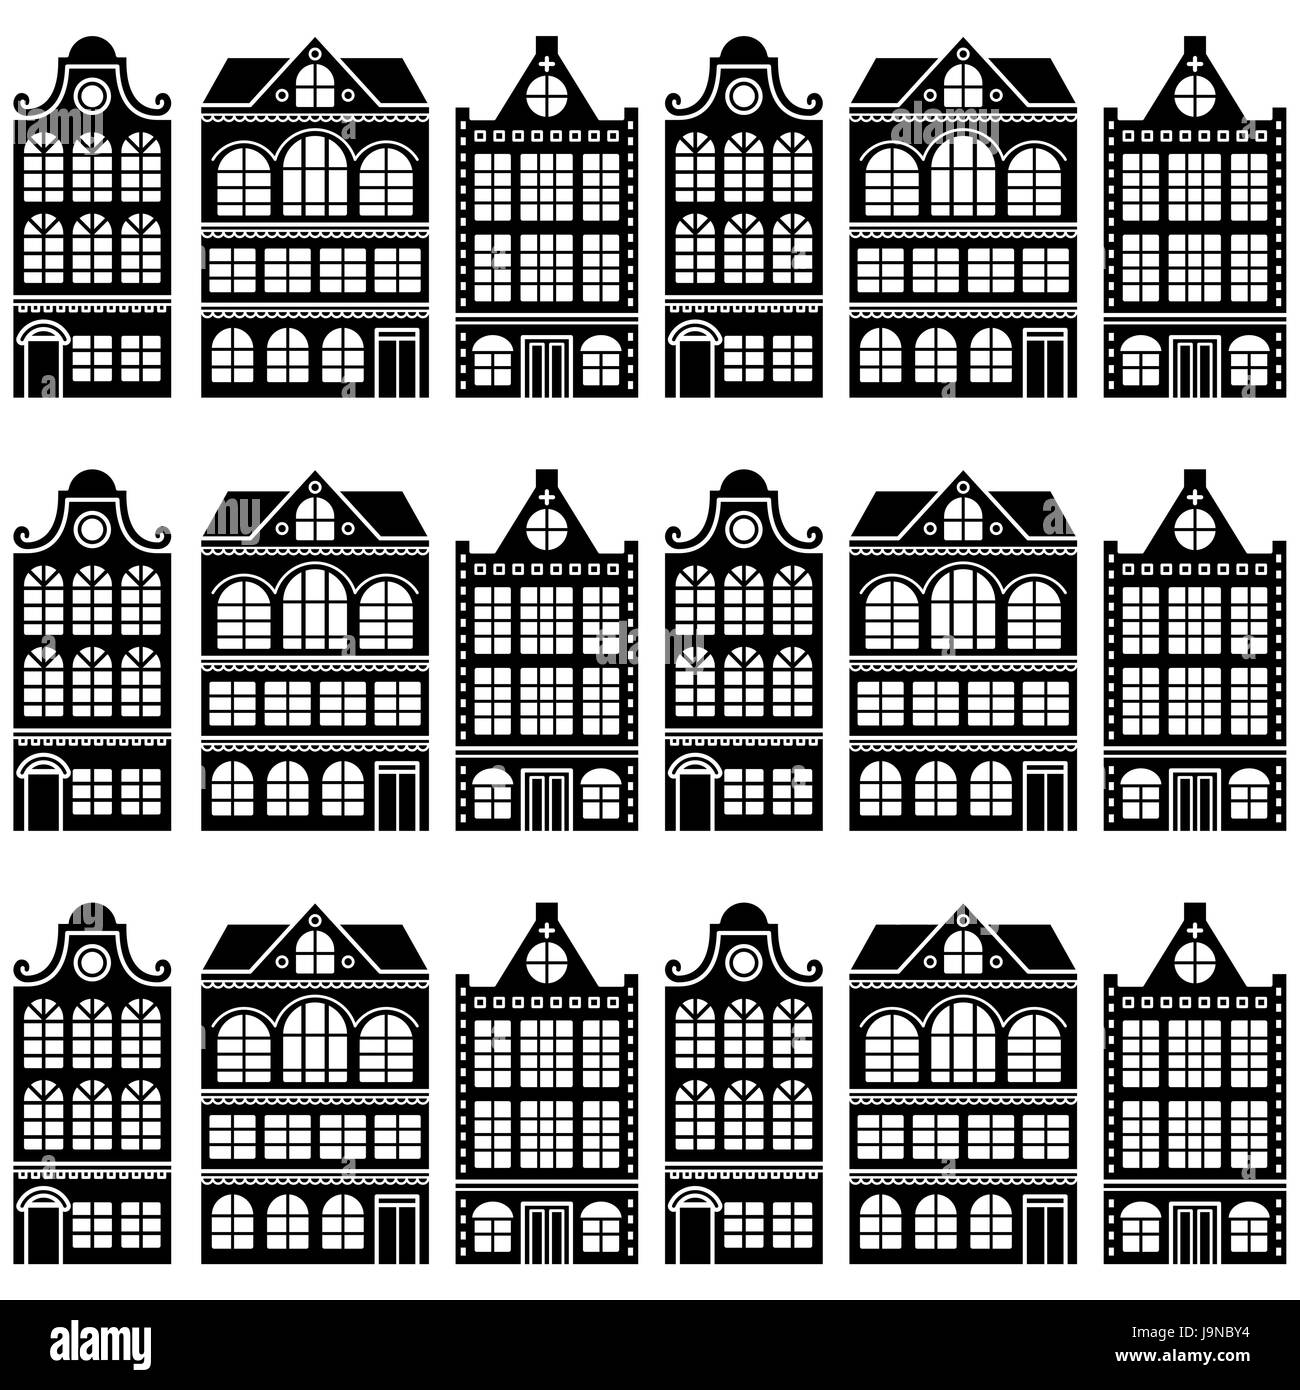 Chambre transparente - modèle néerlandais, Amsterdam, les maisons de style rétro Illustration de Vecteur